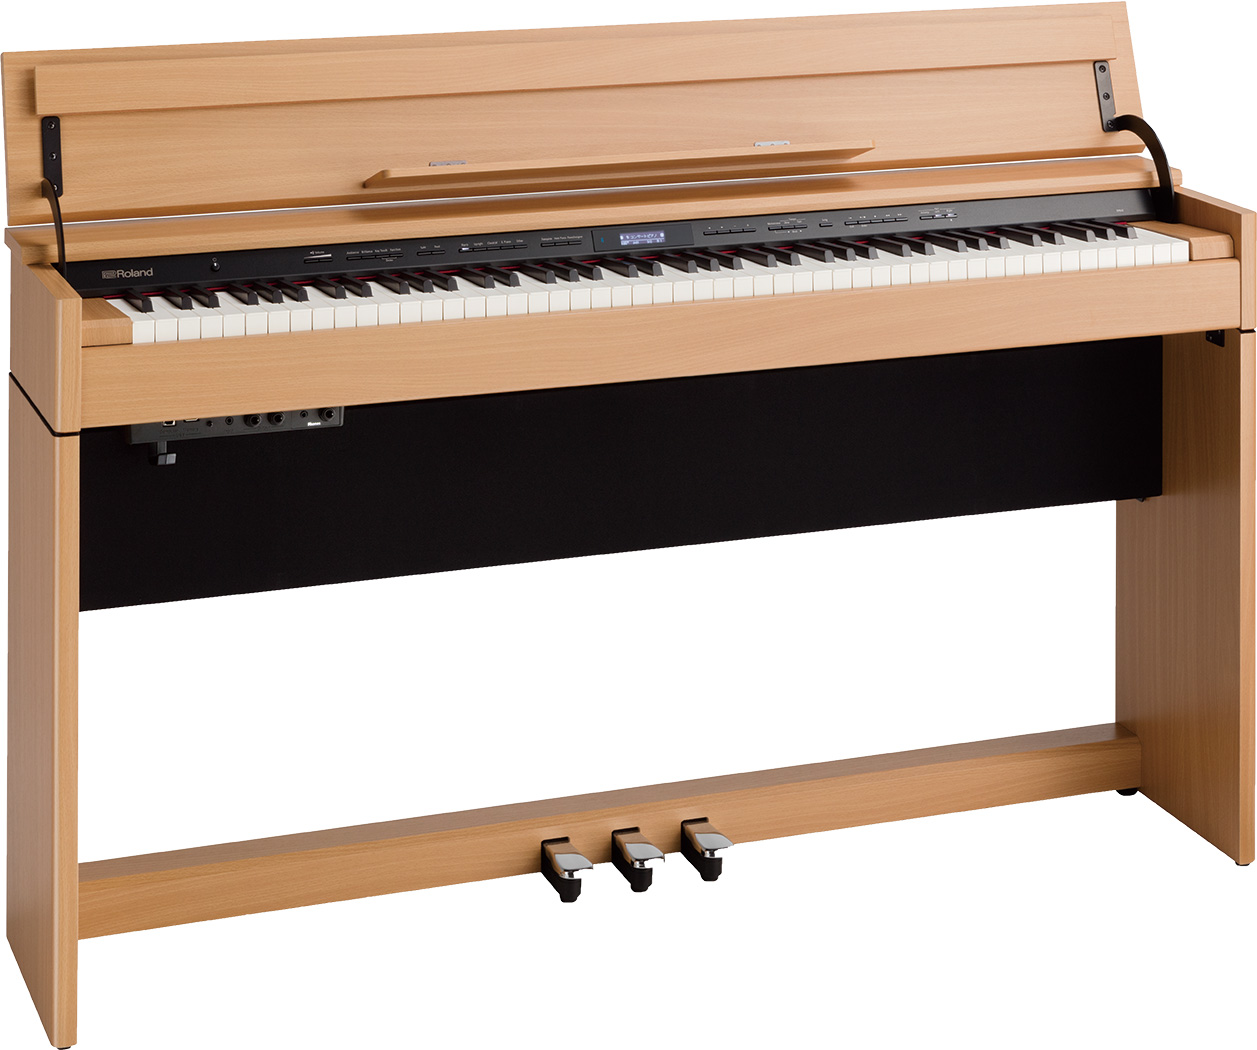 表現力にさらに磨きをかけたスタイリッシュなデジタルピアノ DP603紹介動画 奥行きスリムでスタイリッシュなデザイン、高い基本性能の電子ピアノです。 ピアノとしての高い基本性能を備えたスタイリッシュ・ピアノ スタイリッシュなデザインと高品位なピアノ・クオリティが人気のDP シリーズ。奥行き約35cm […]